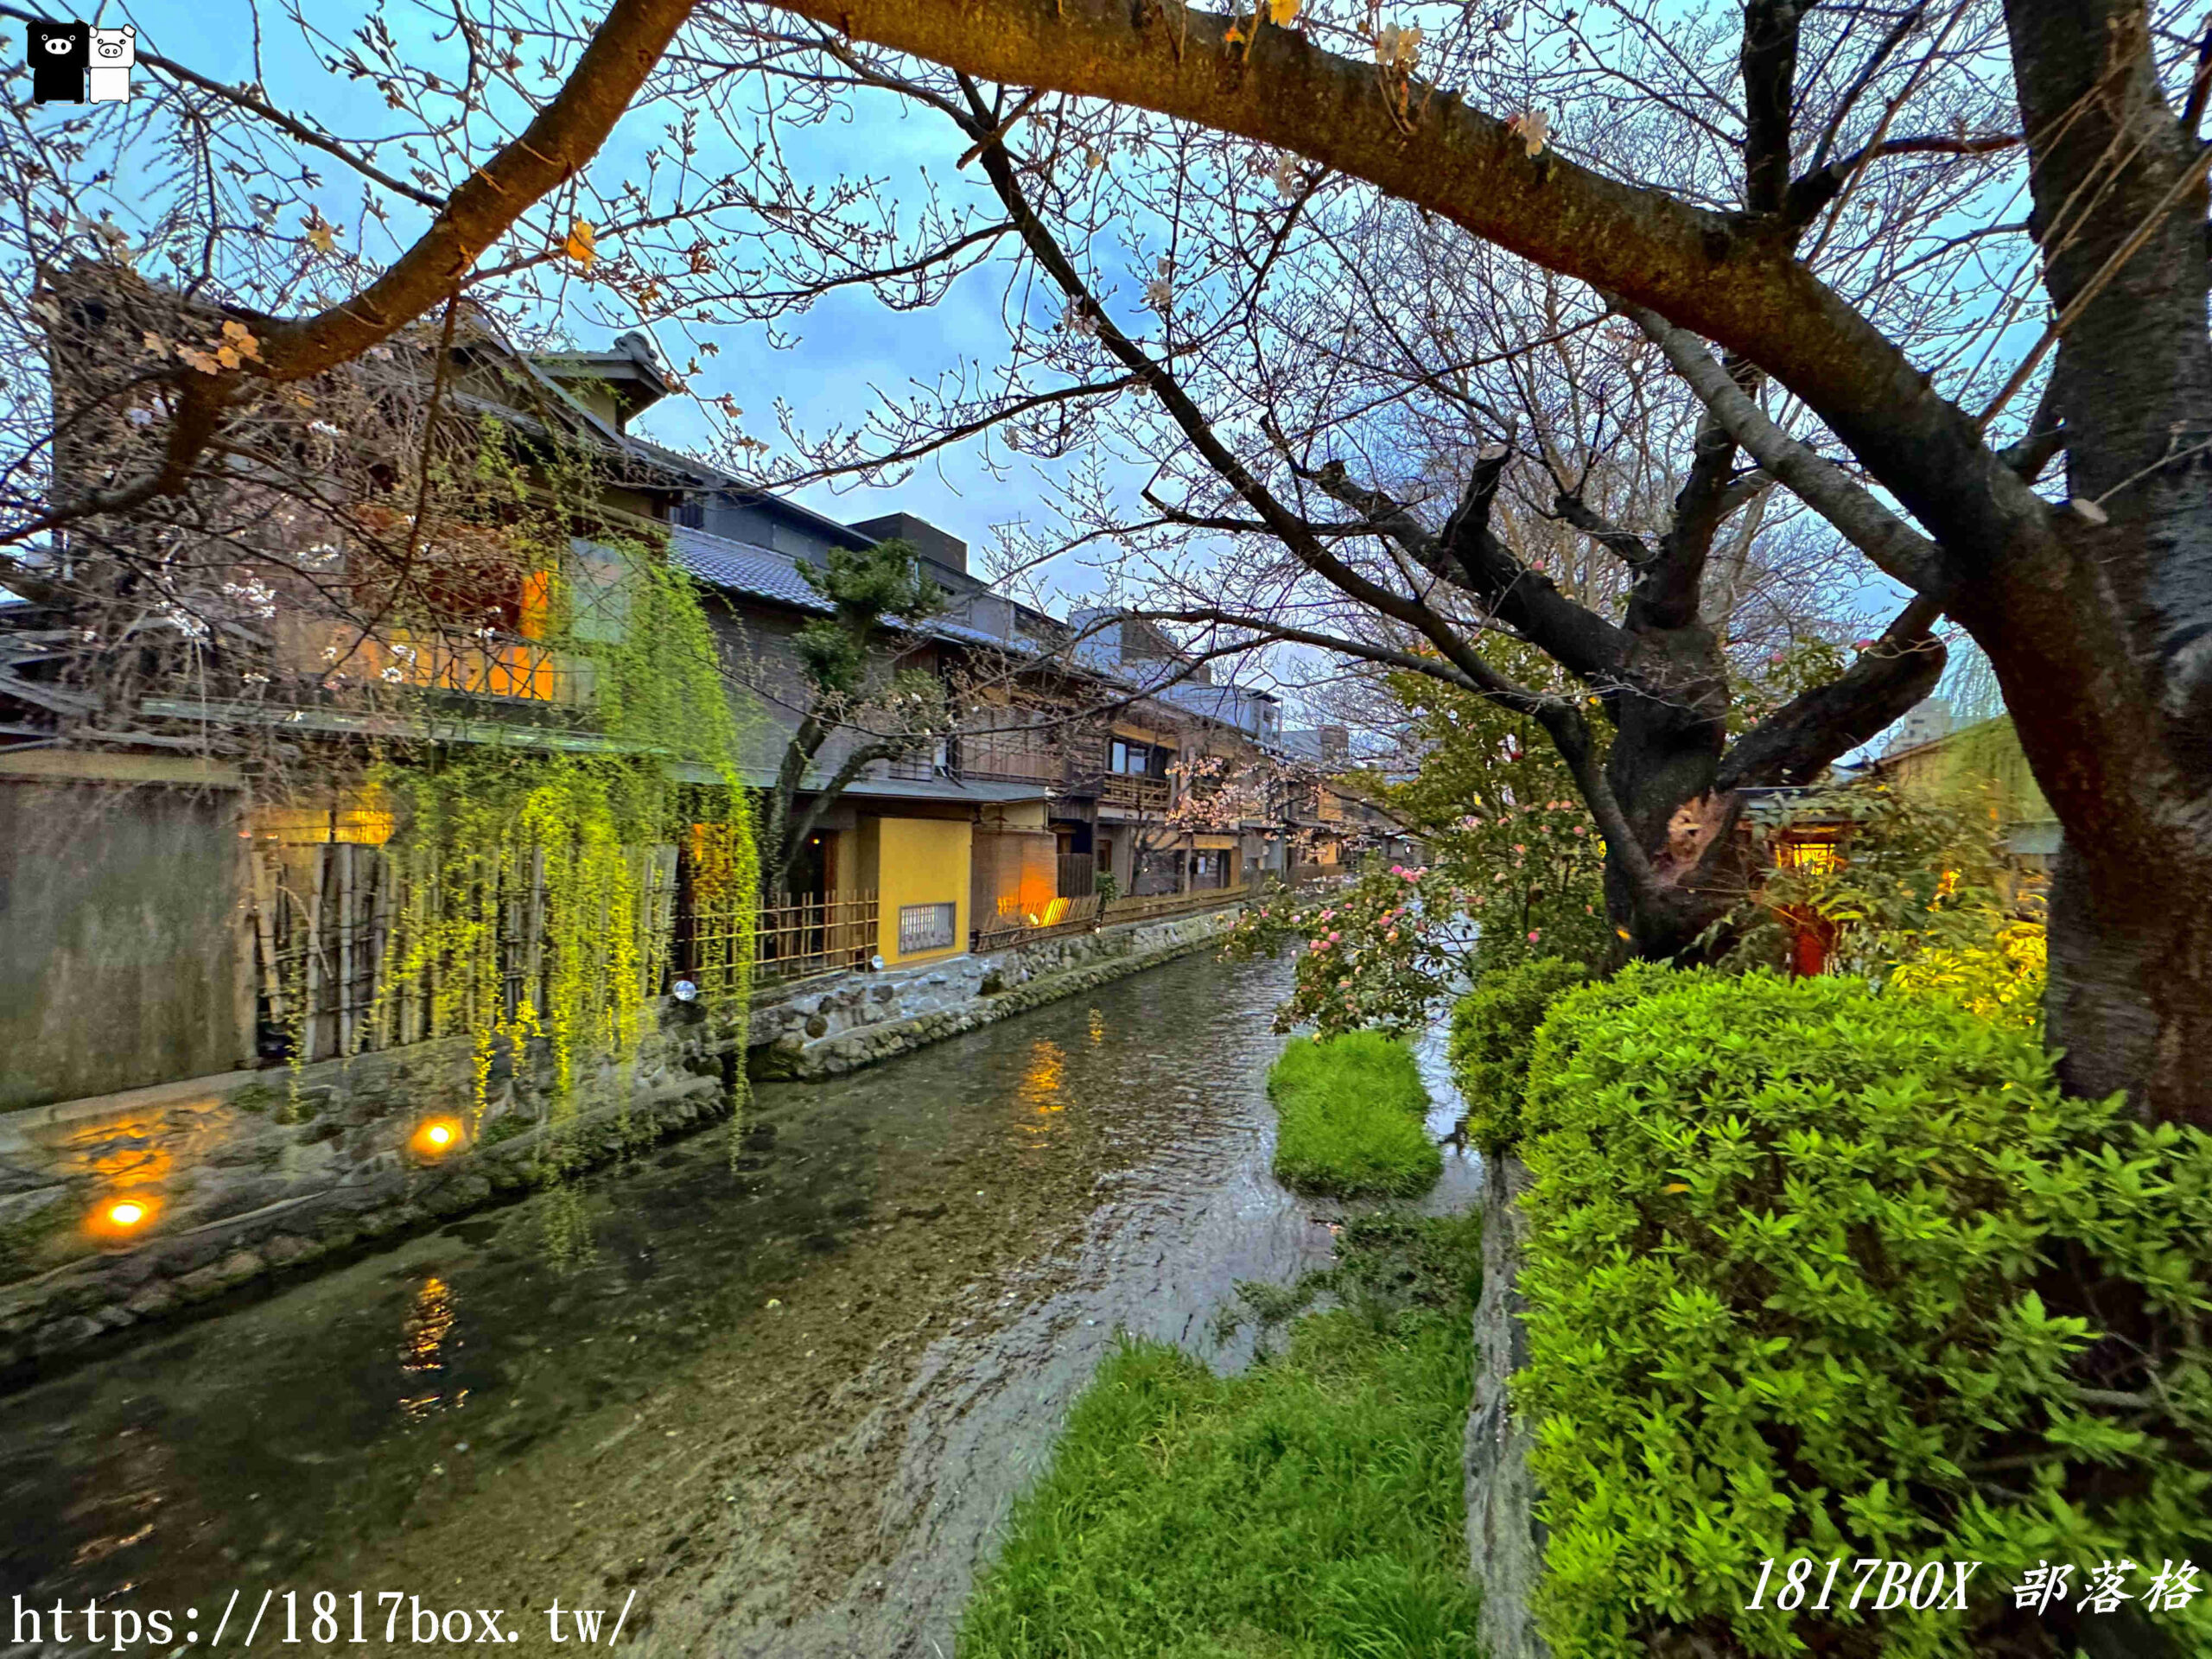 網站近期文章：【京都景點】祇園白川筋。小橋流水。古色古香的町家建築